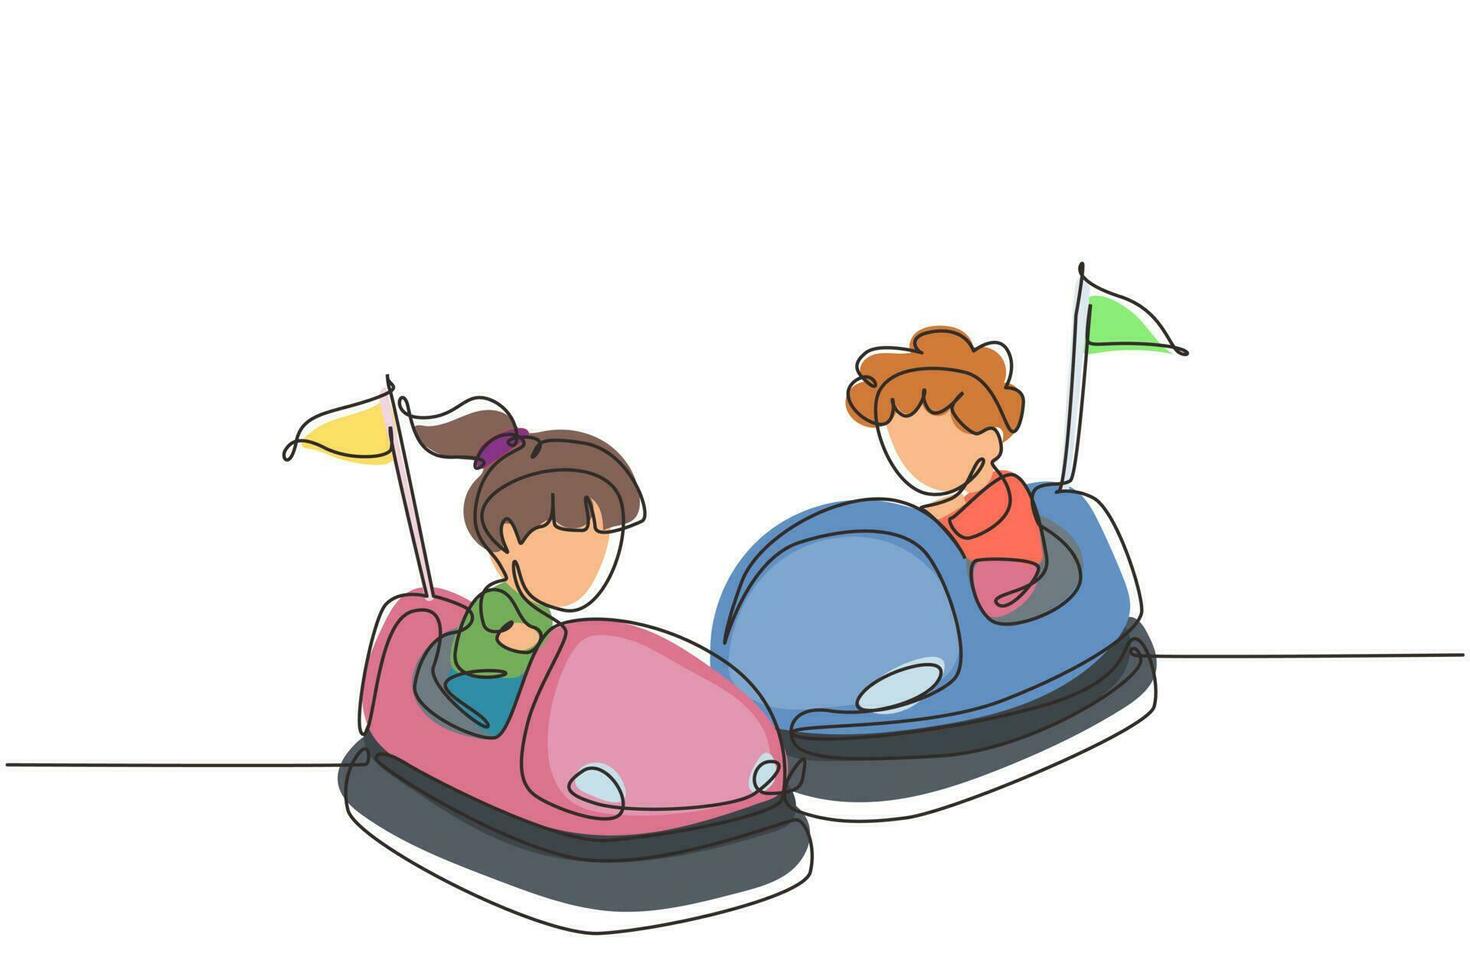 niños de dibujo de una sola línea continua conduciendo un coche de choque. niño y niña sonrientes felices en la atracción de la rueda automática de parachoques en el parque de atracciones. tiempo de disfrute en familia. vector de diseño gráfico de dibujo de una línea